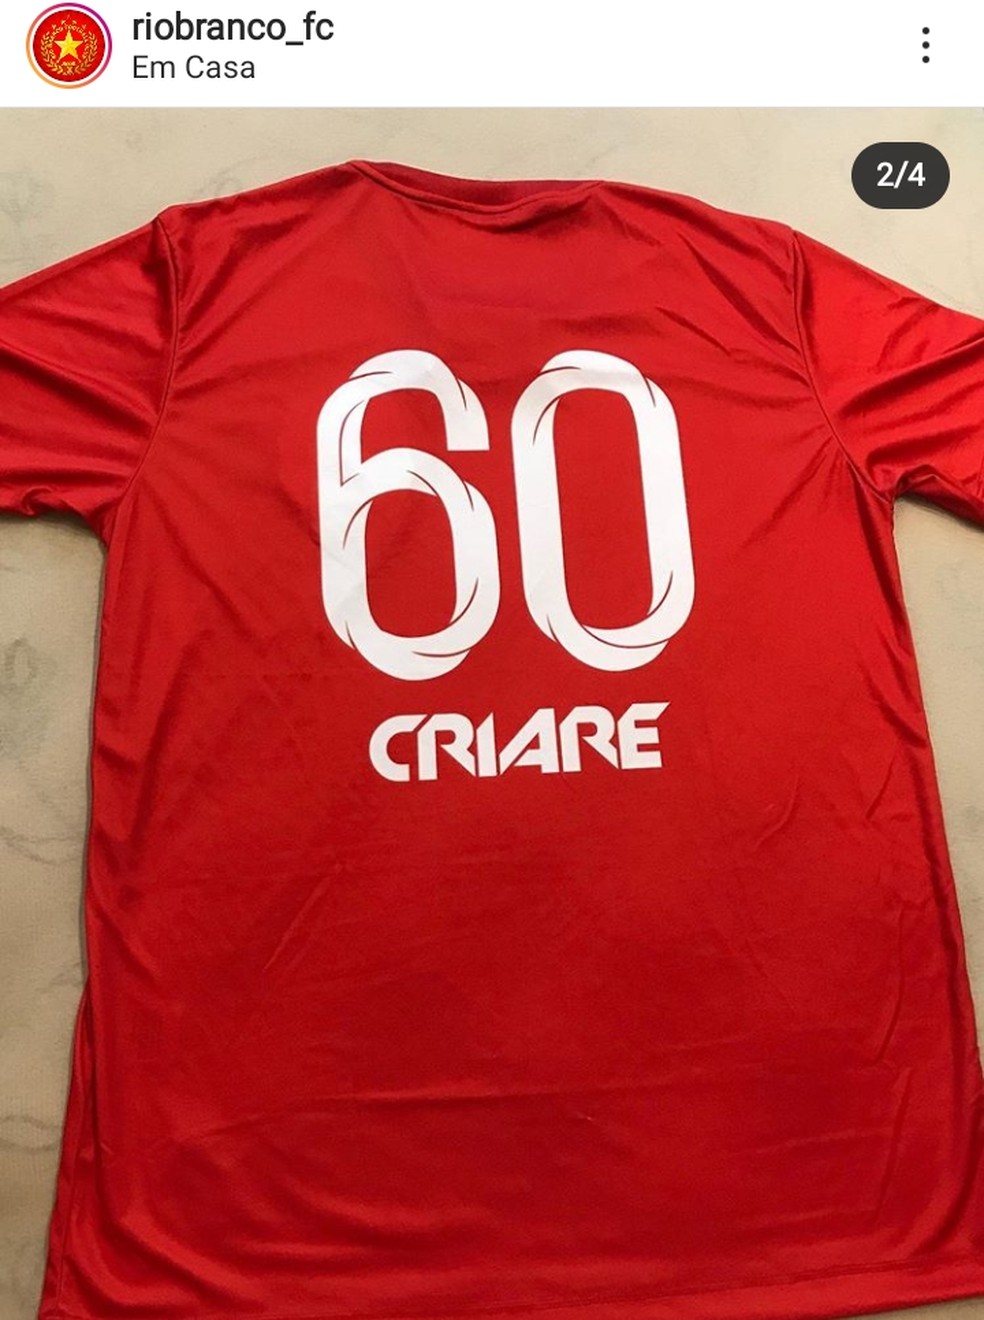 Réplica da Camisa da Seleção é vendida por R$ 100 no Calçadão, em Rio  Branco -  - Notícias do Acre